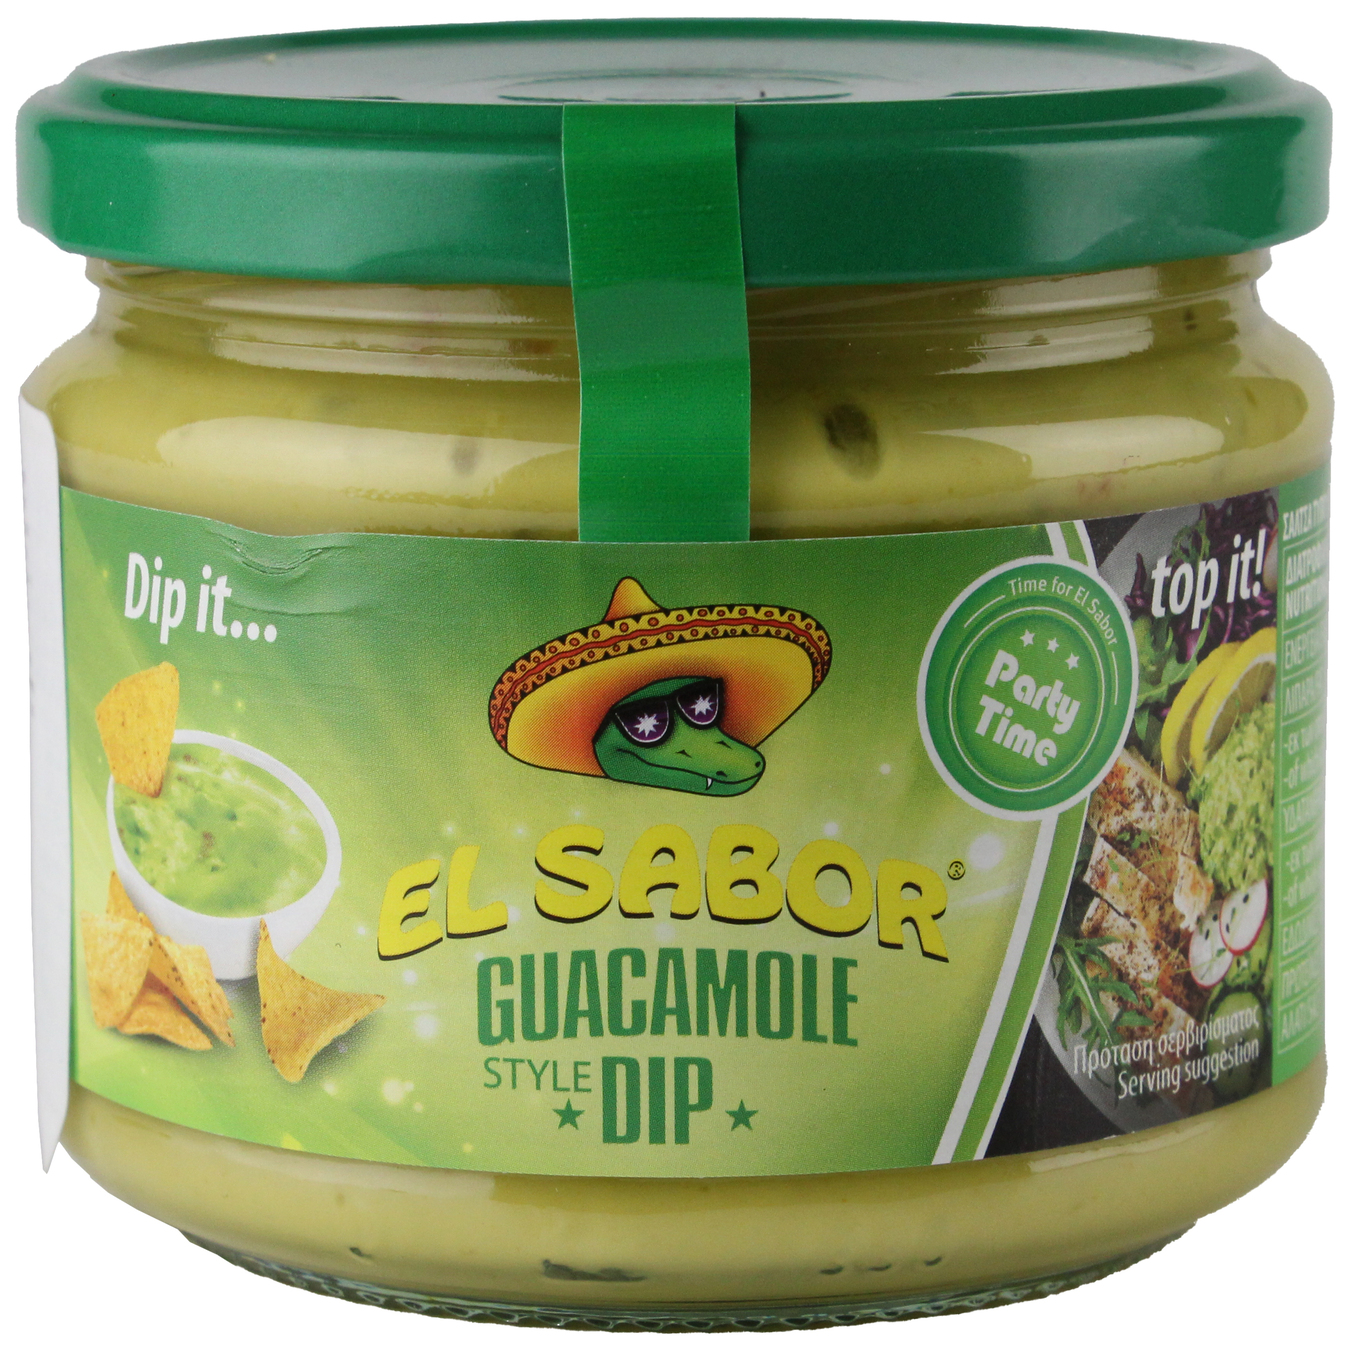 EL Sabor Guacamole Dip Sauce 300g